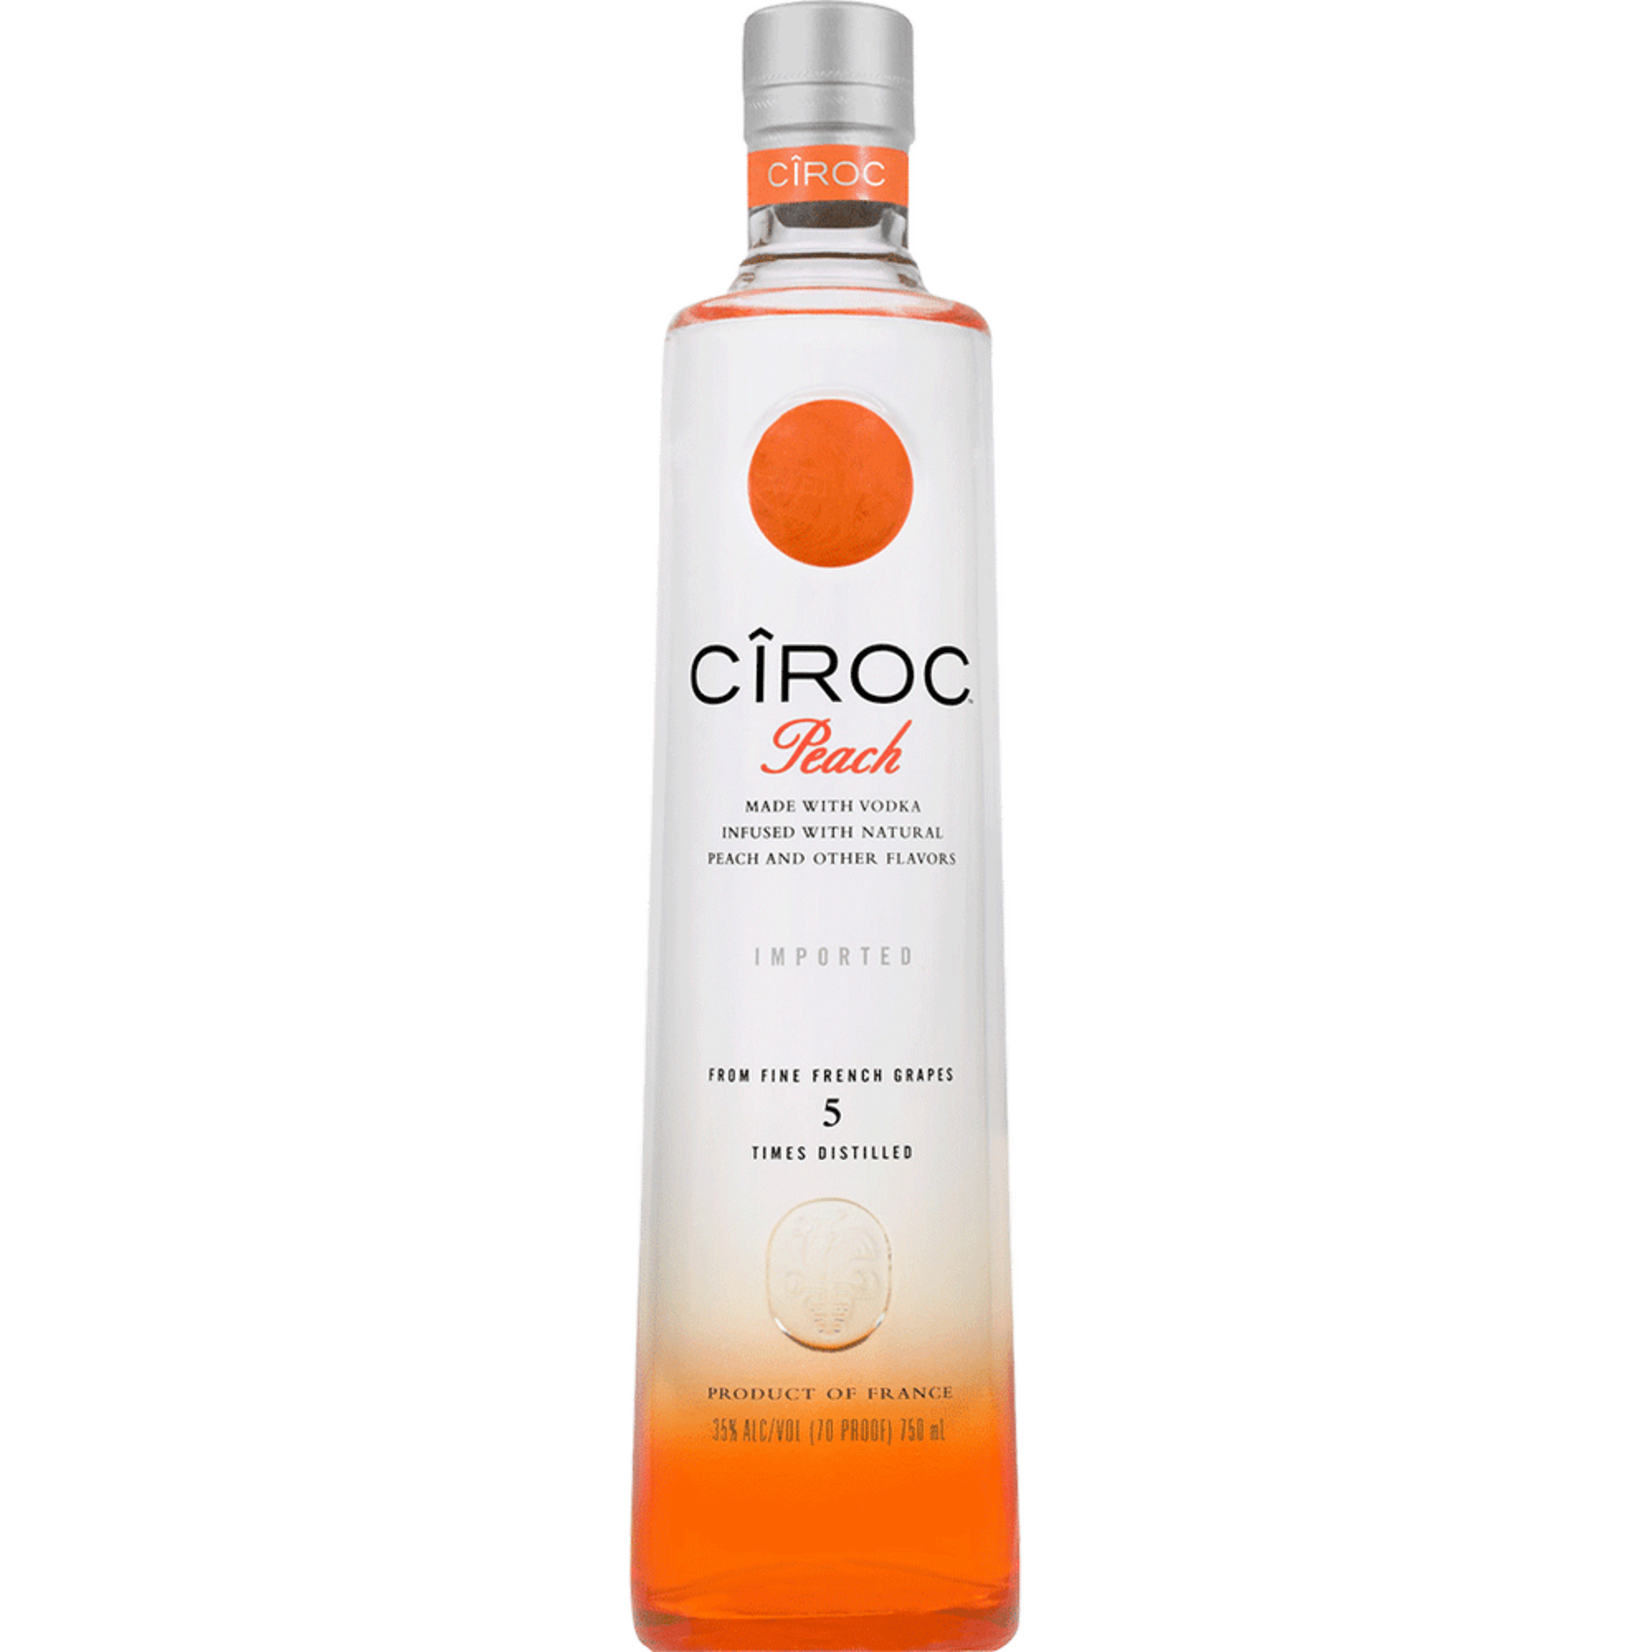 Ciroc Vodka Ciroc Peach Flavored Vodka 70Proof 750ml